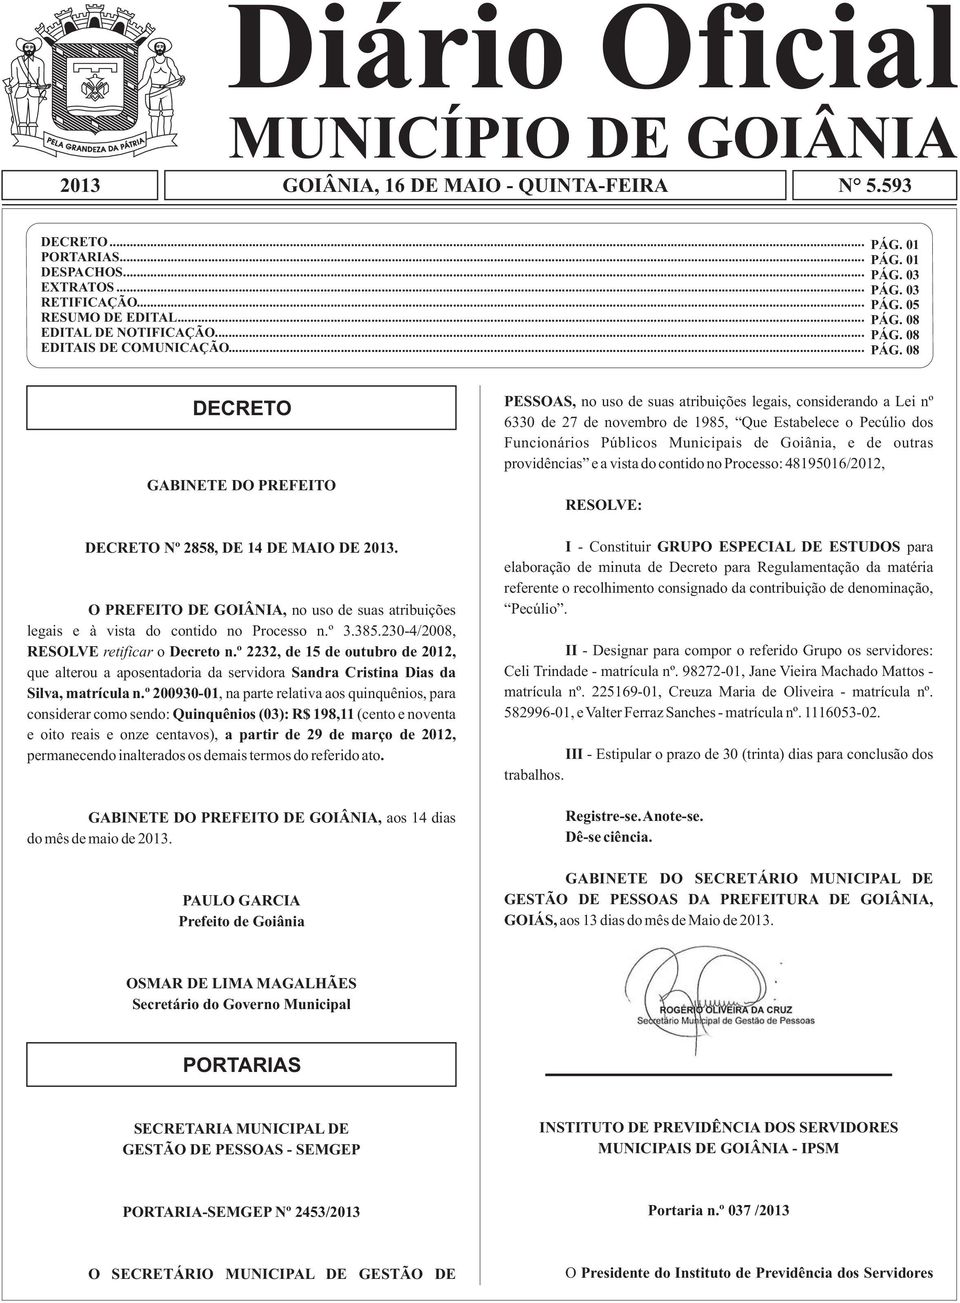 O PREFEITO DE GOIÂNIA, no uso de suas atribuições legais e à vista do contido no Processo n.º 3.385.230-4/2008, RESOLVE retificar o Decreto n.